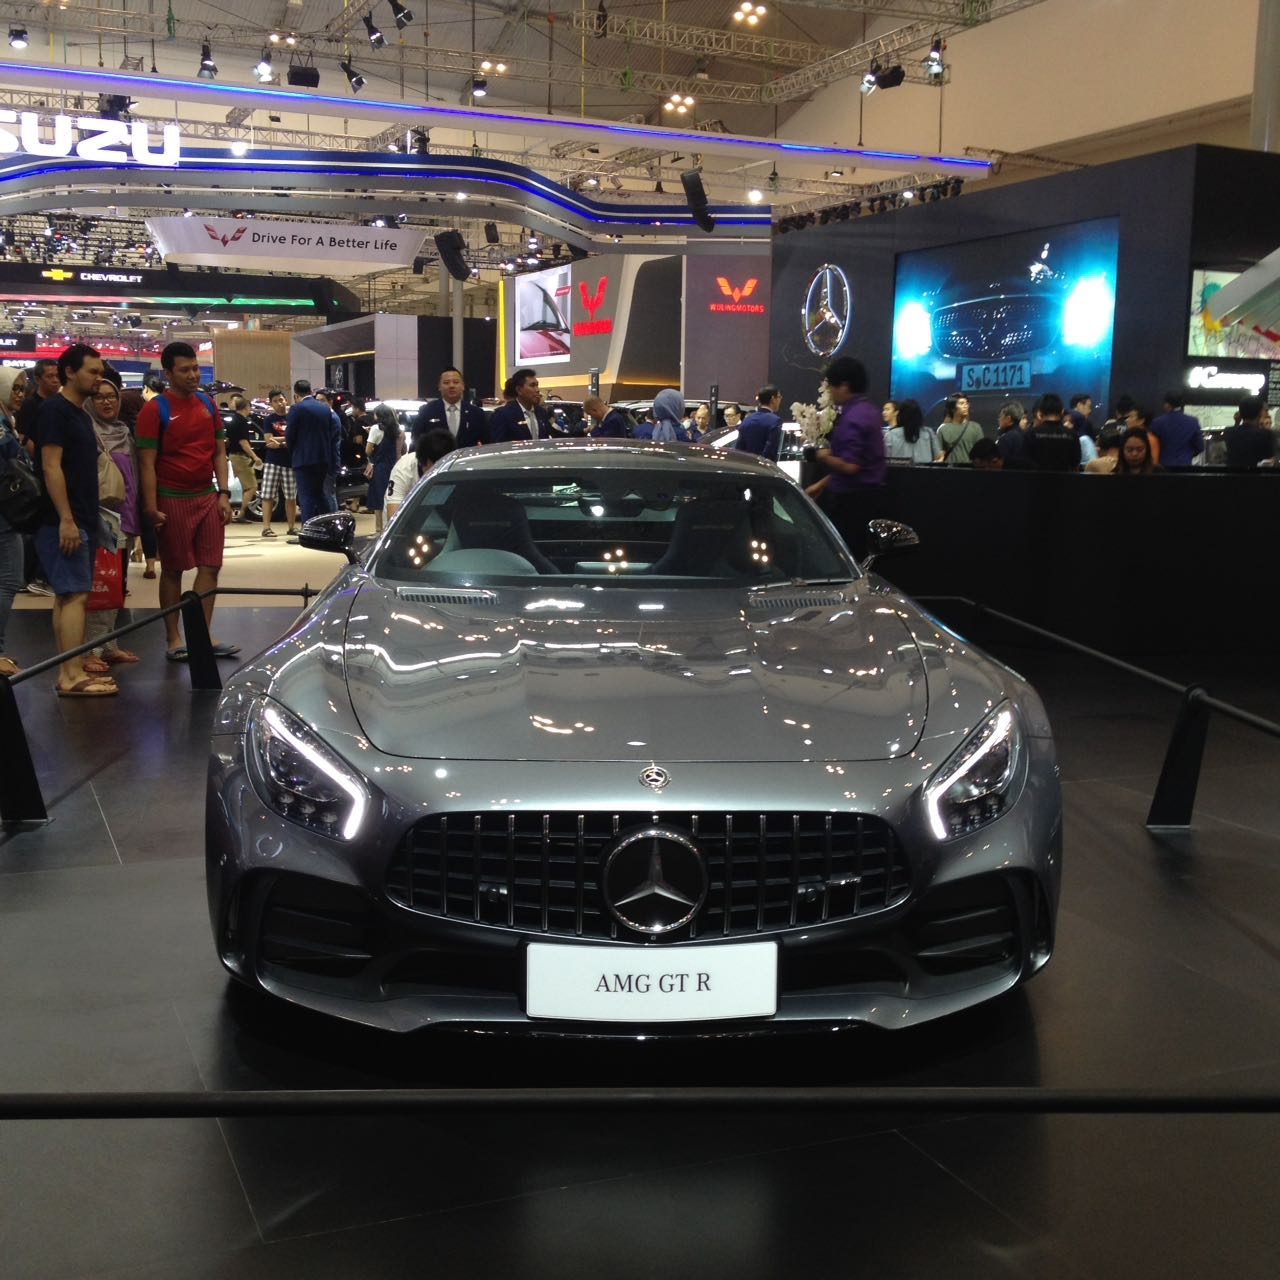 Mercedes AMG GT-R mengusung 4.000 cc V8 bi-turbo bertenaga 585 dk dengan torsi 700 Nm 7 percepatan. Mobil ini dibandrol dengan harga Rp 5,59 miliar. Foto oleh Dwi Agustiar/Rappler 